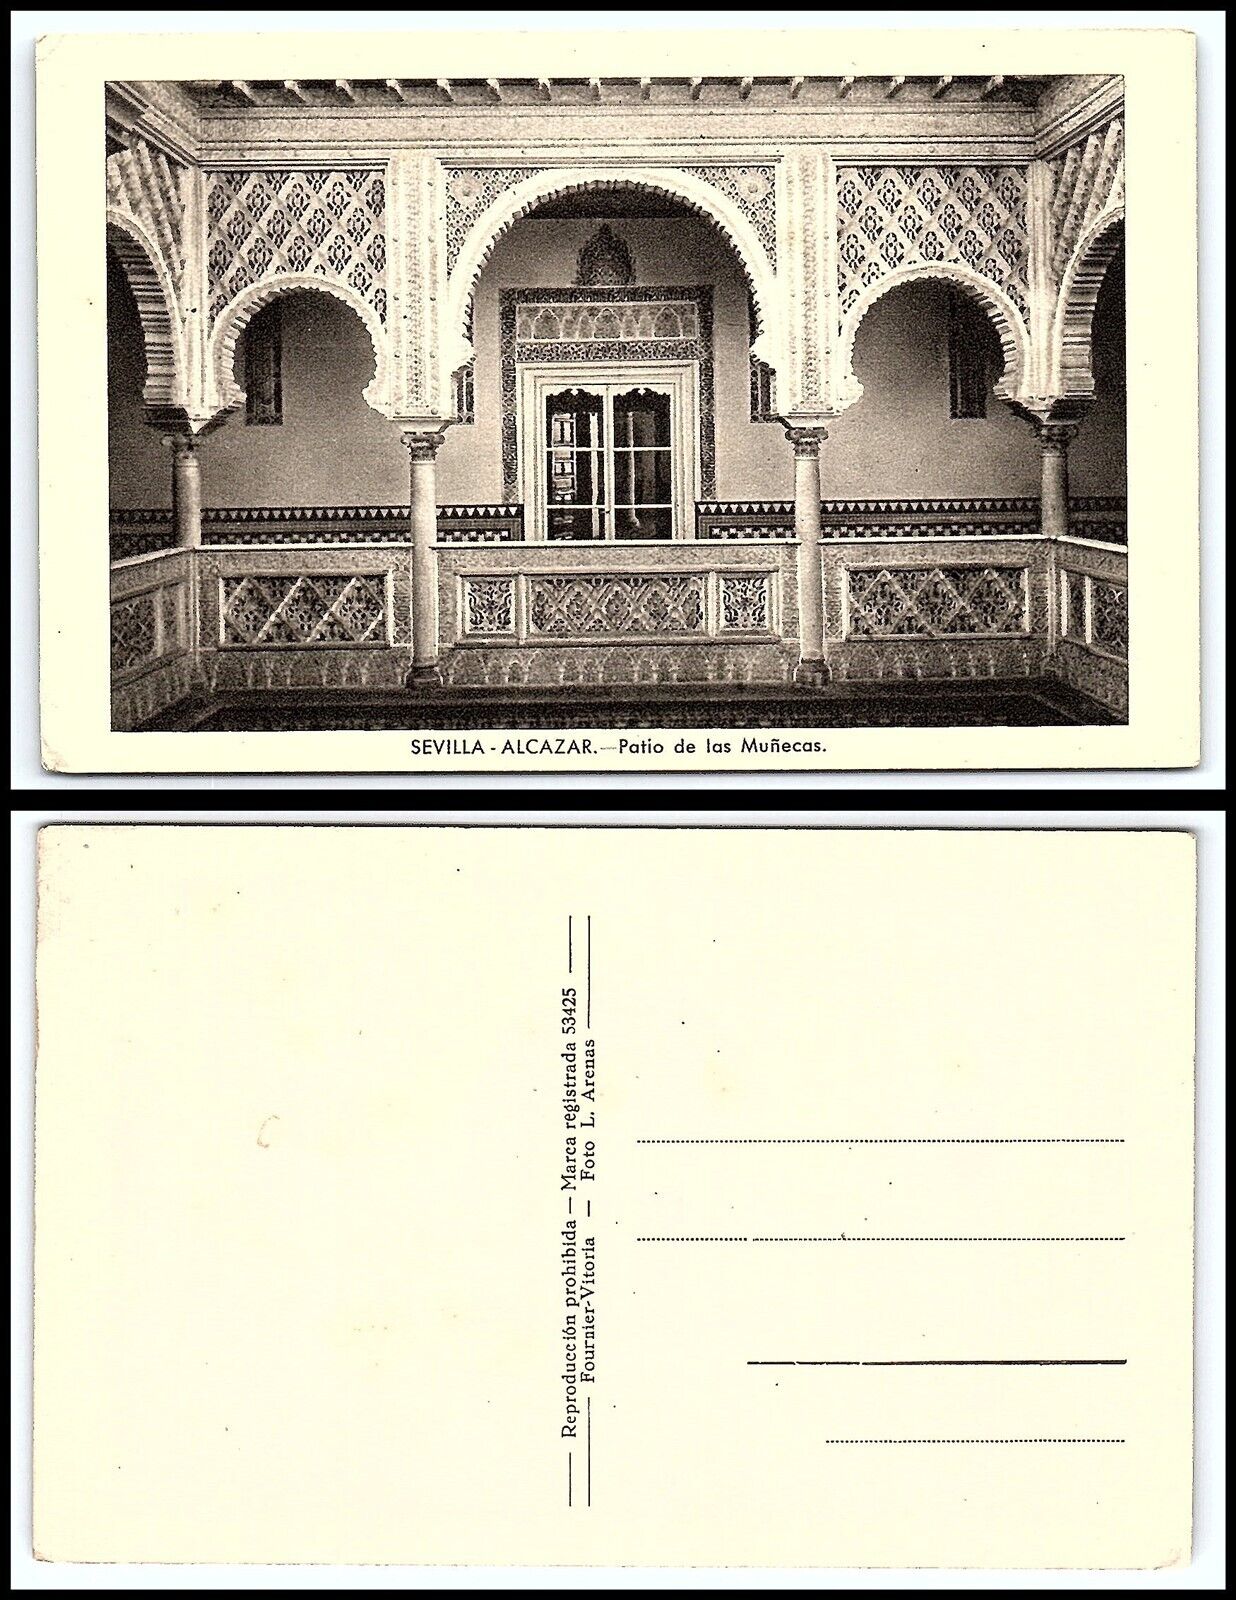 SPAIN Postcard - Sevilla, Alcazar, Patio de las Munecas D10